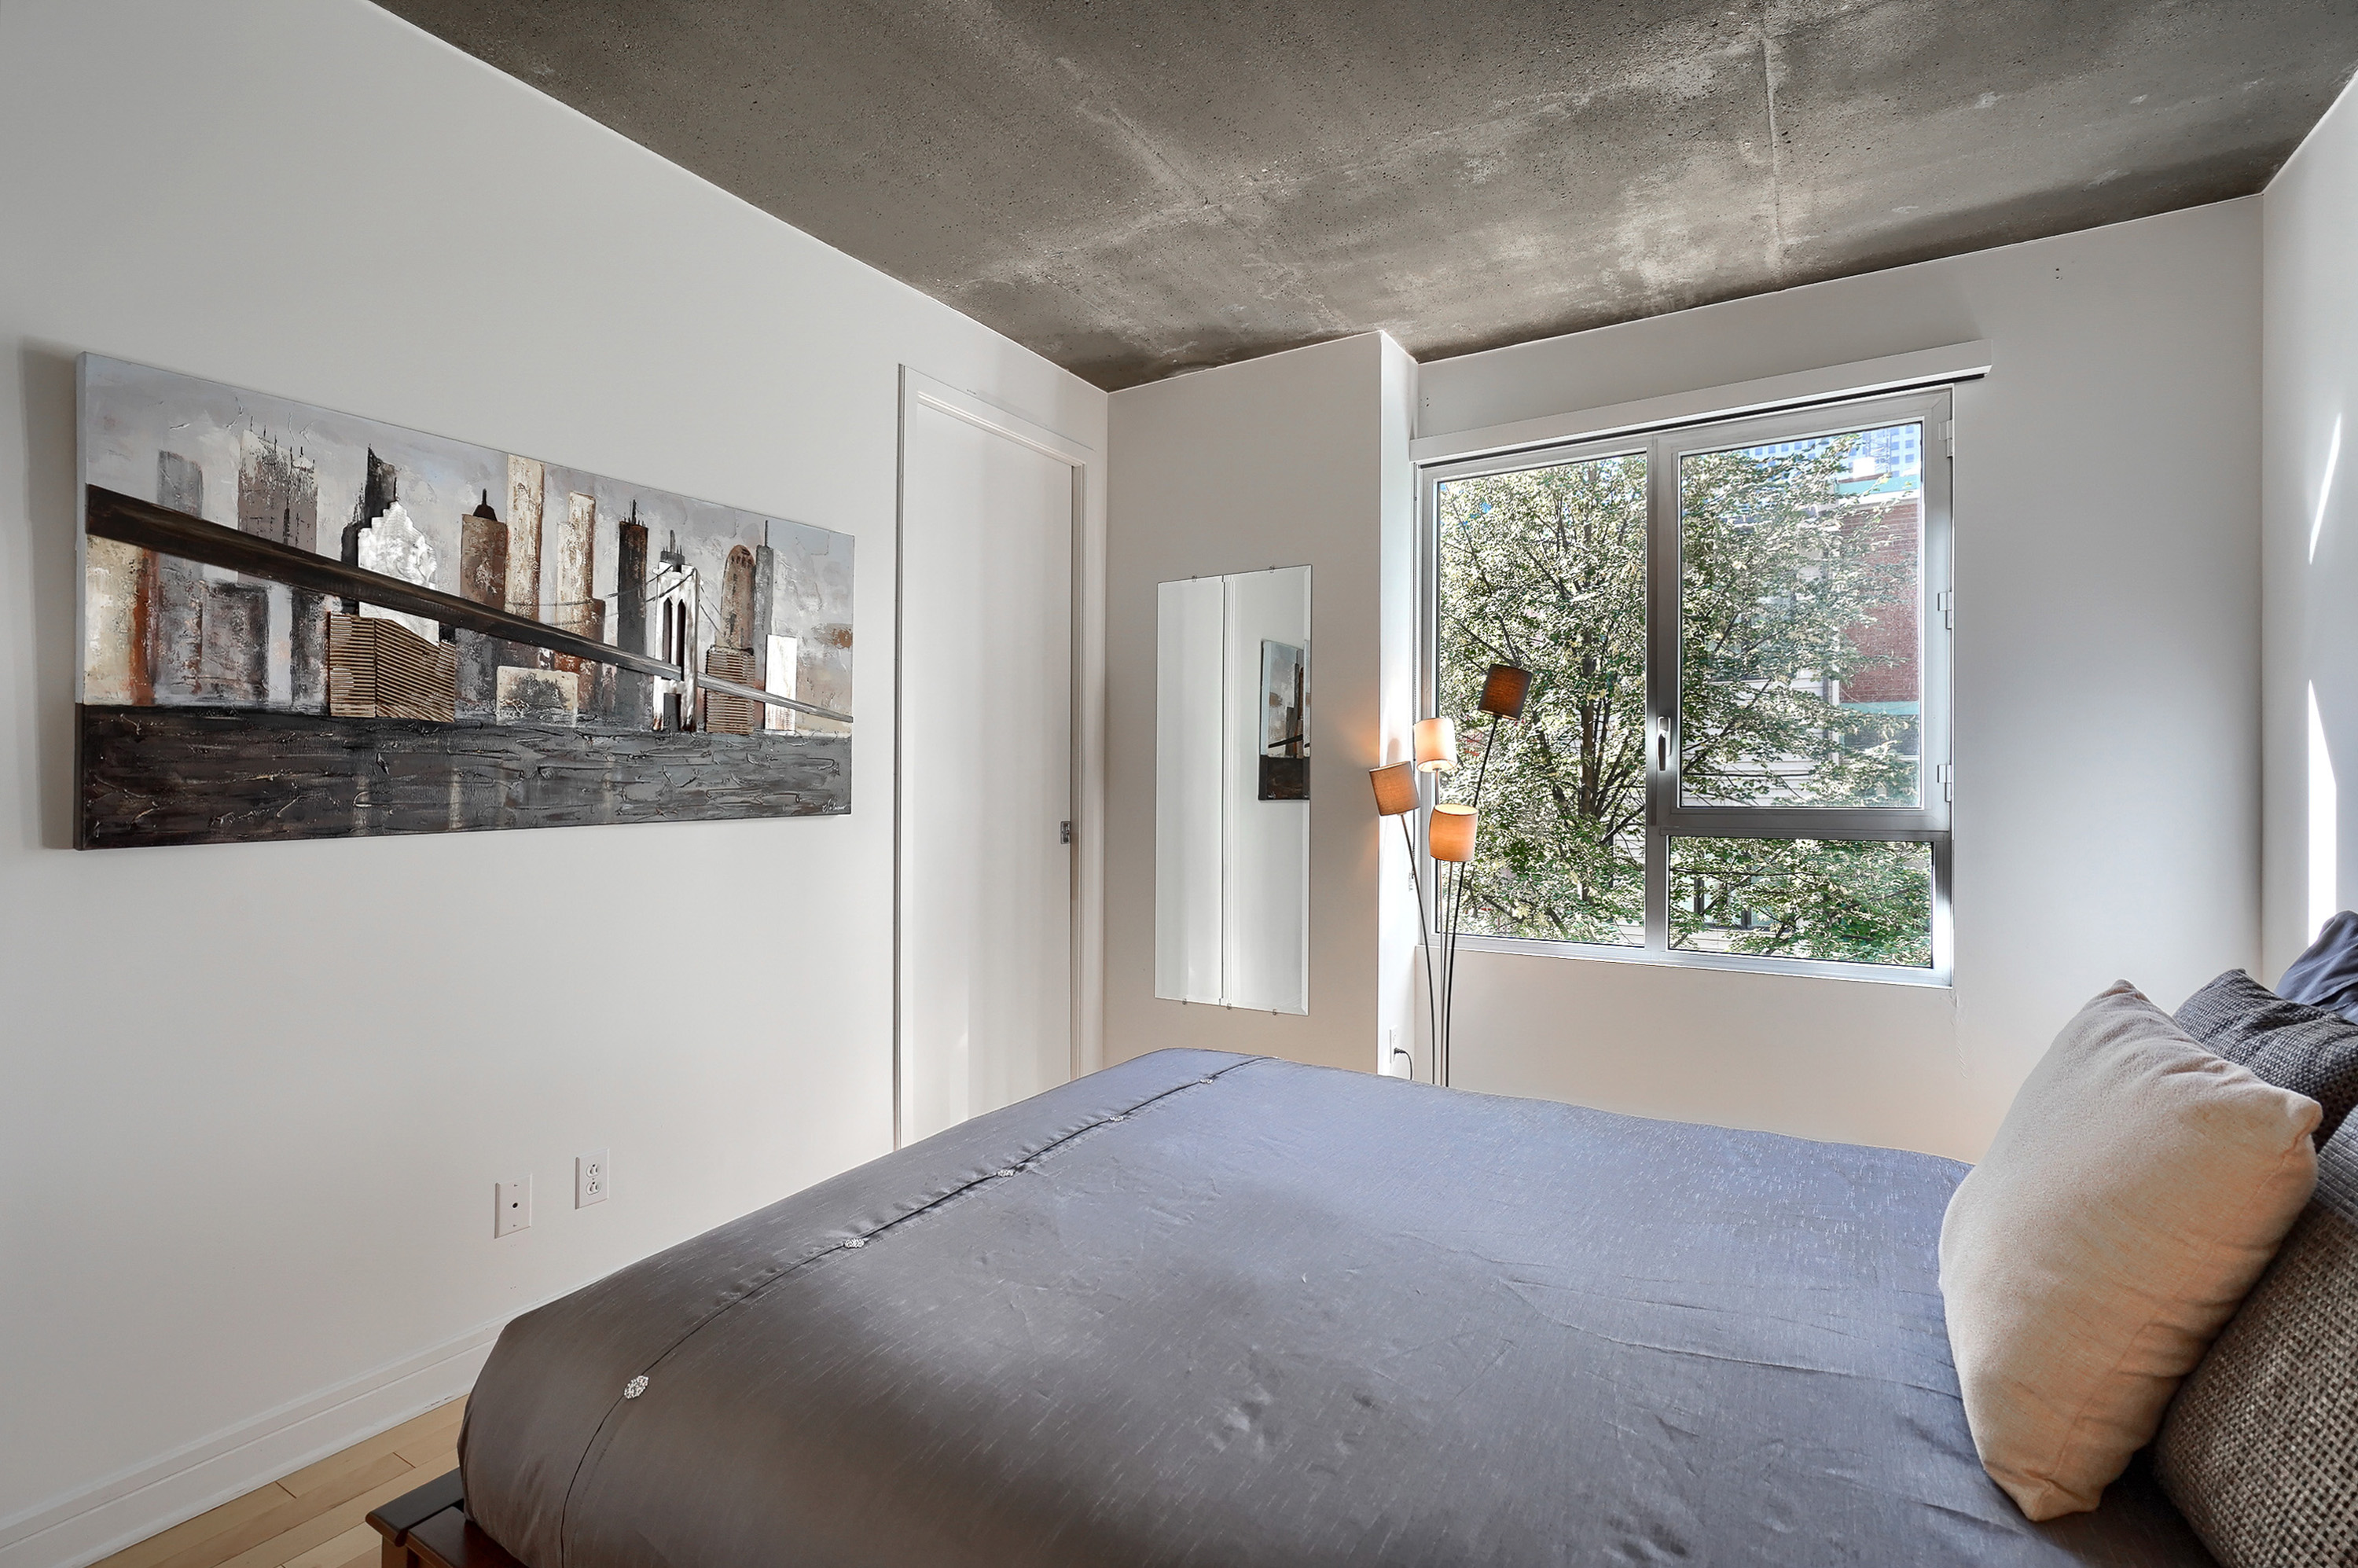 Vue du pied de lit avec tableau moderne dans les tons de brun et argent sur mur blanc, long miroir sur la droite et fenêtre beignant la chambre de soleil tout au long de la journée dans cet appartement entièrement équipé au centre-ville de Montreal